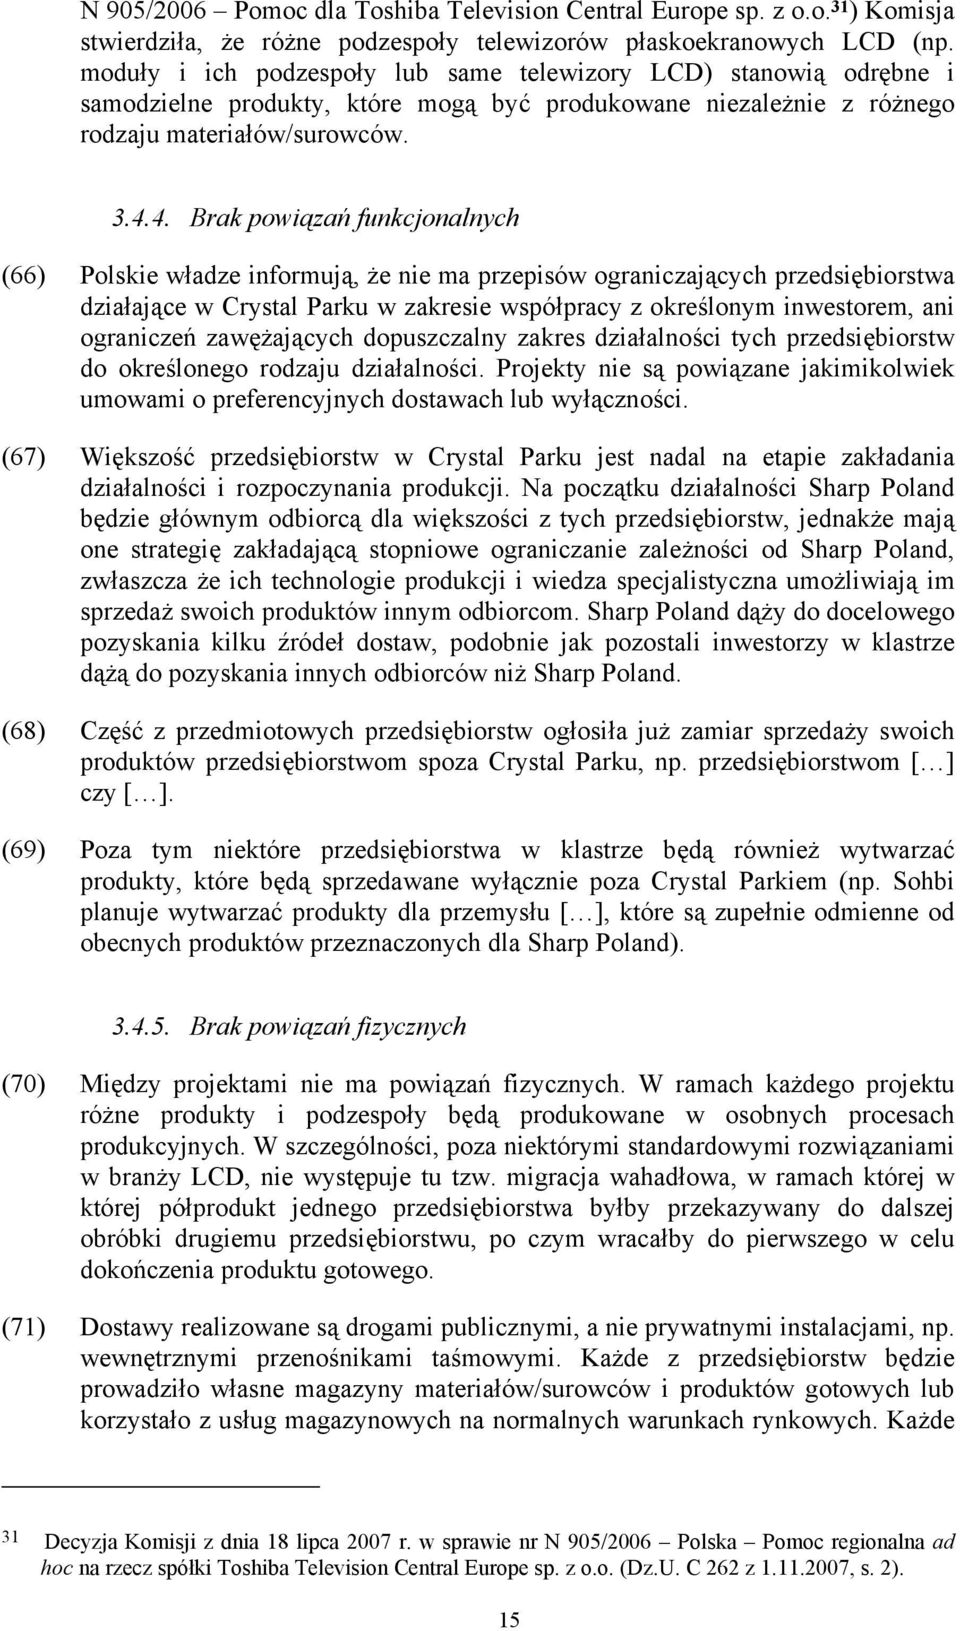 4. Brak powiązań funkcjonalnych (66) Polskie władze informują, że nie ma przepisów ograniczających przedsiębiorstwa działające w Crystal Parku w zakresie współpracy z określonym inwestorem, ani